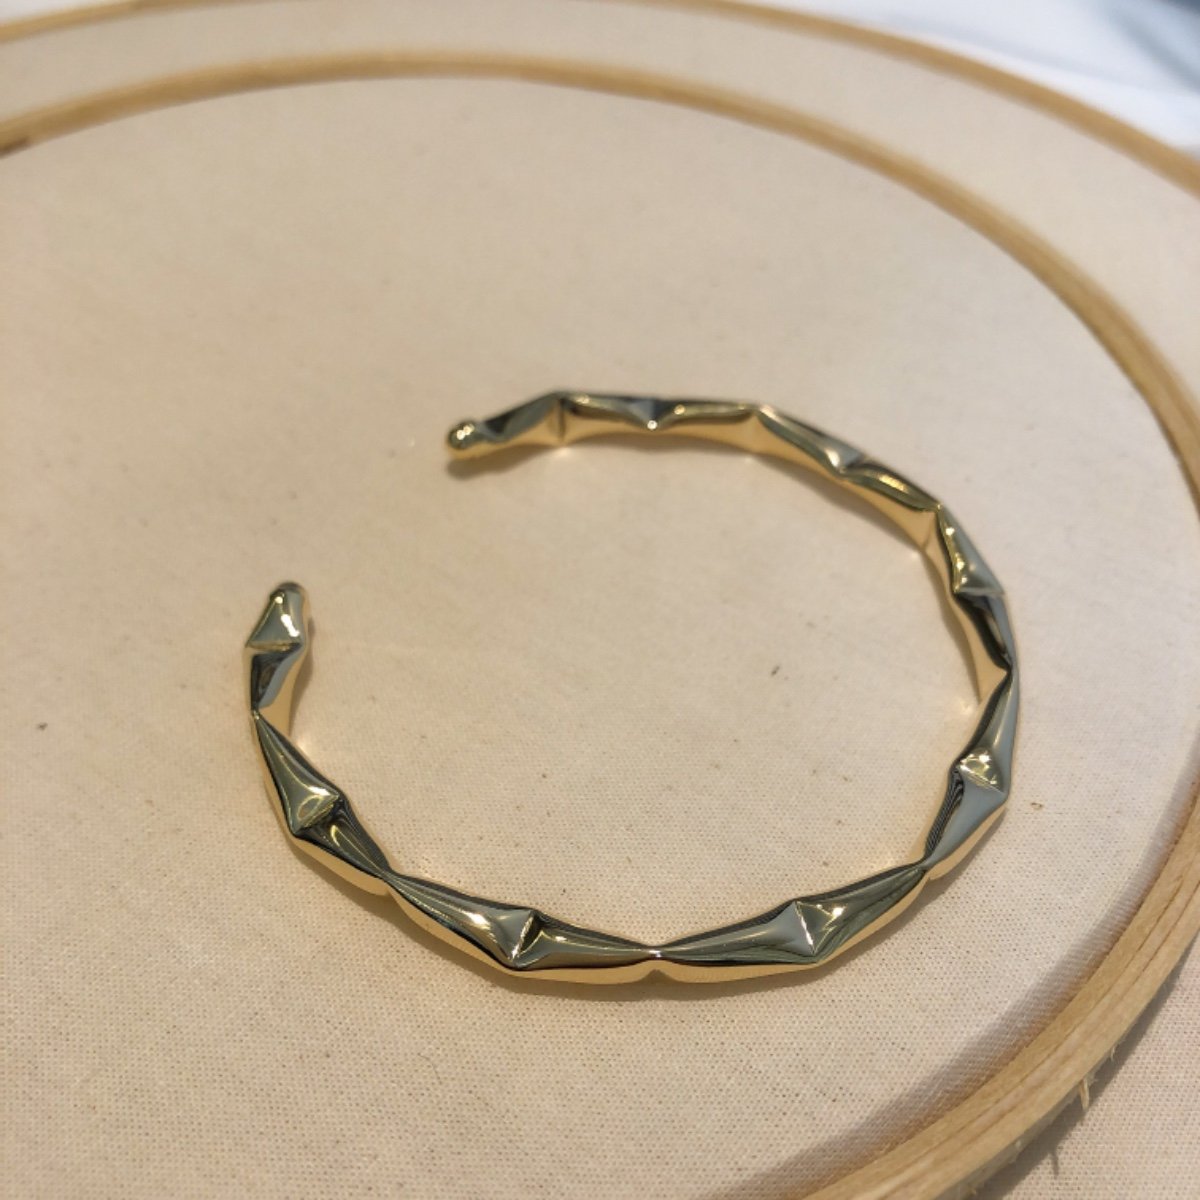 Bracelete design ondulado Banhado em Ouro 18k.